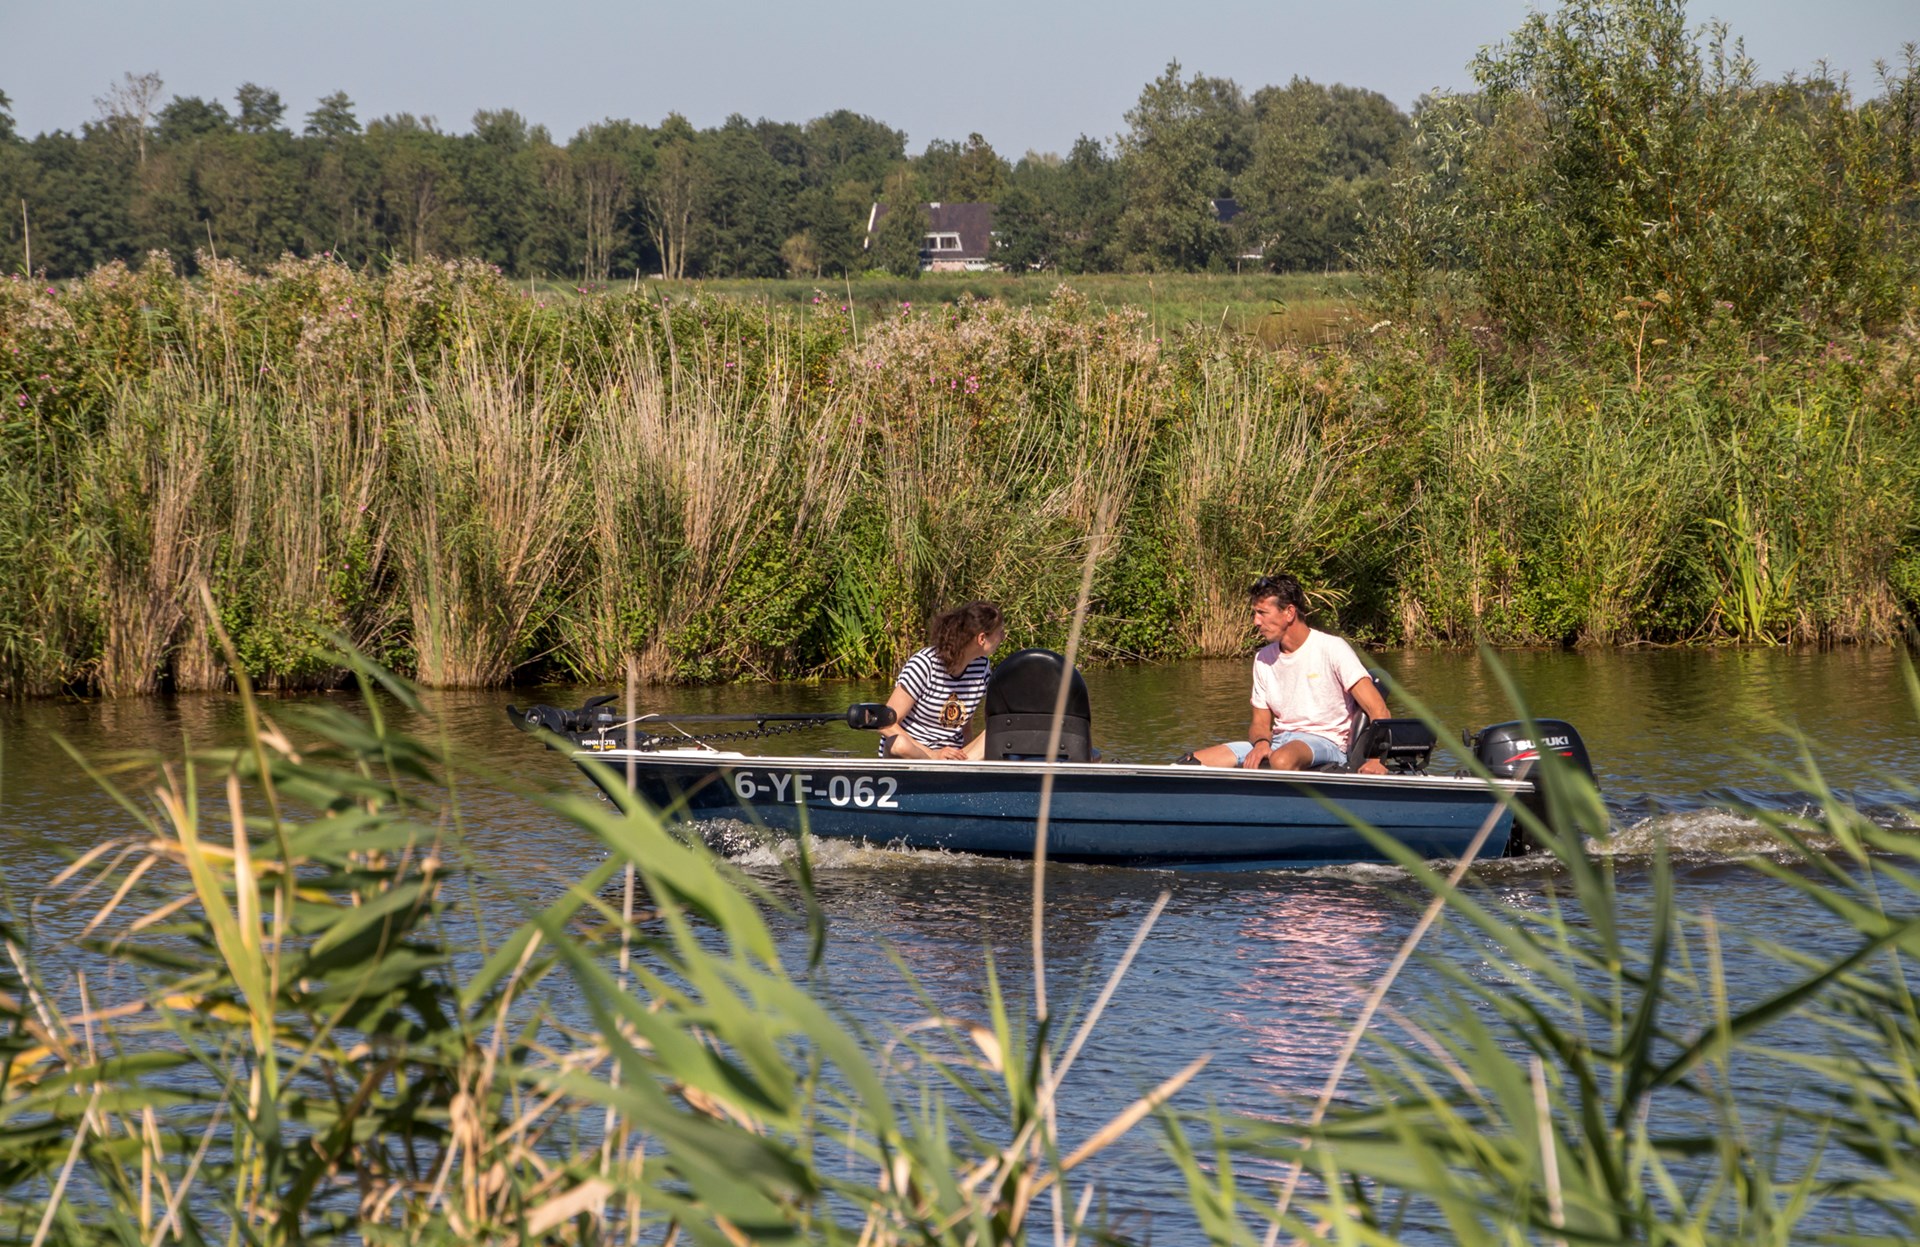 Een stel in een bootje op het water in Langedijk.